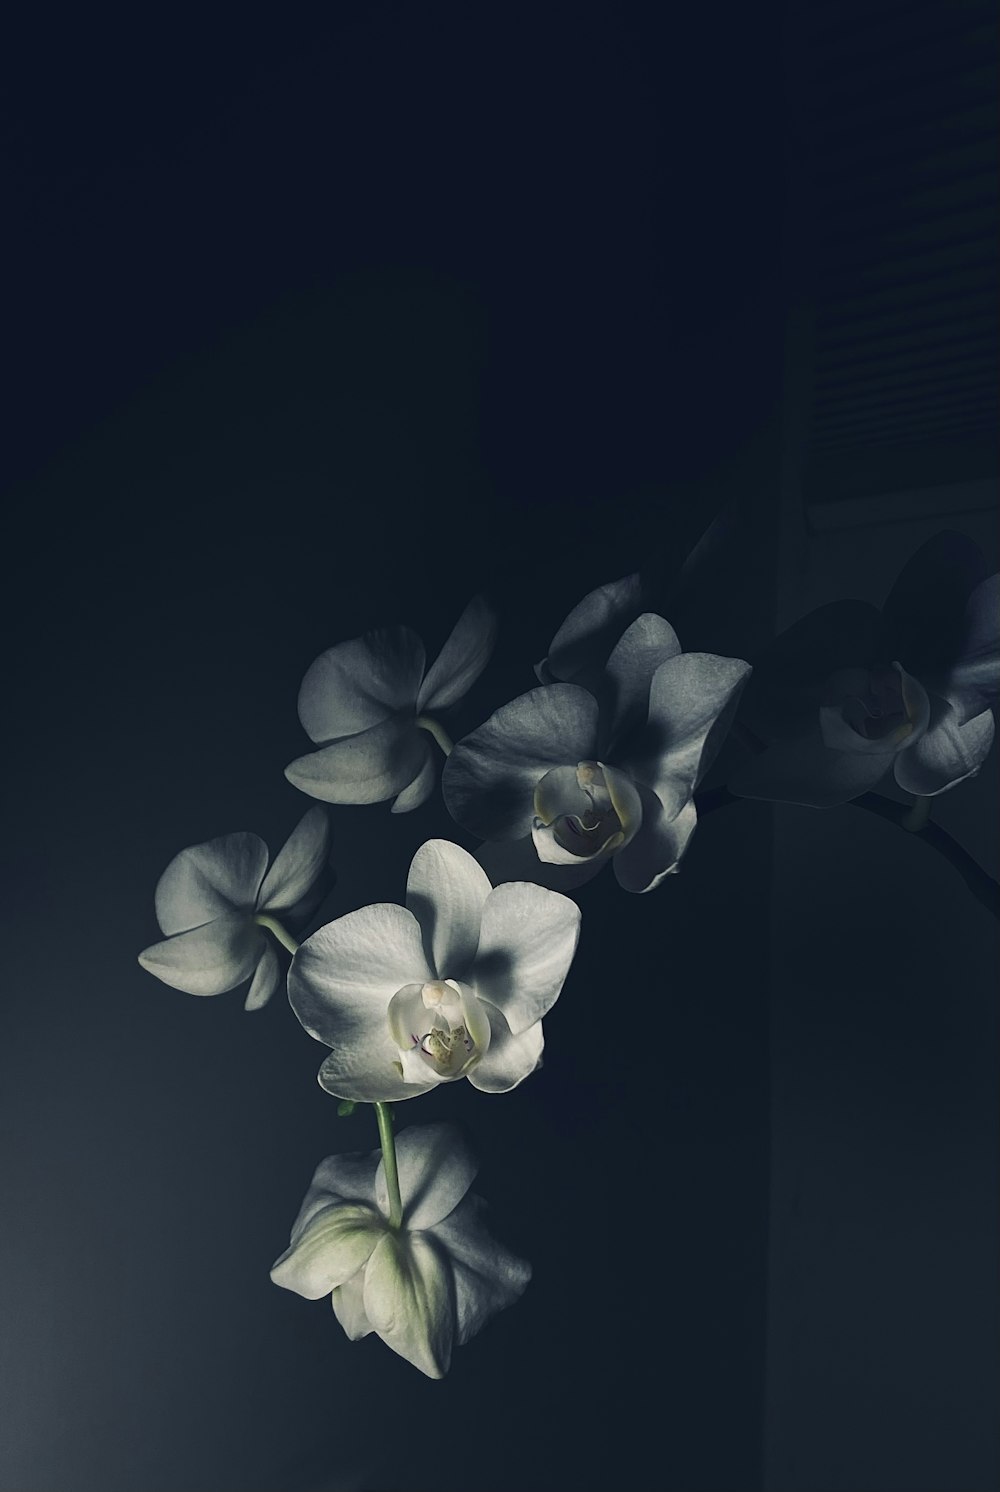 fiore bianco e viola su sfondo nero